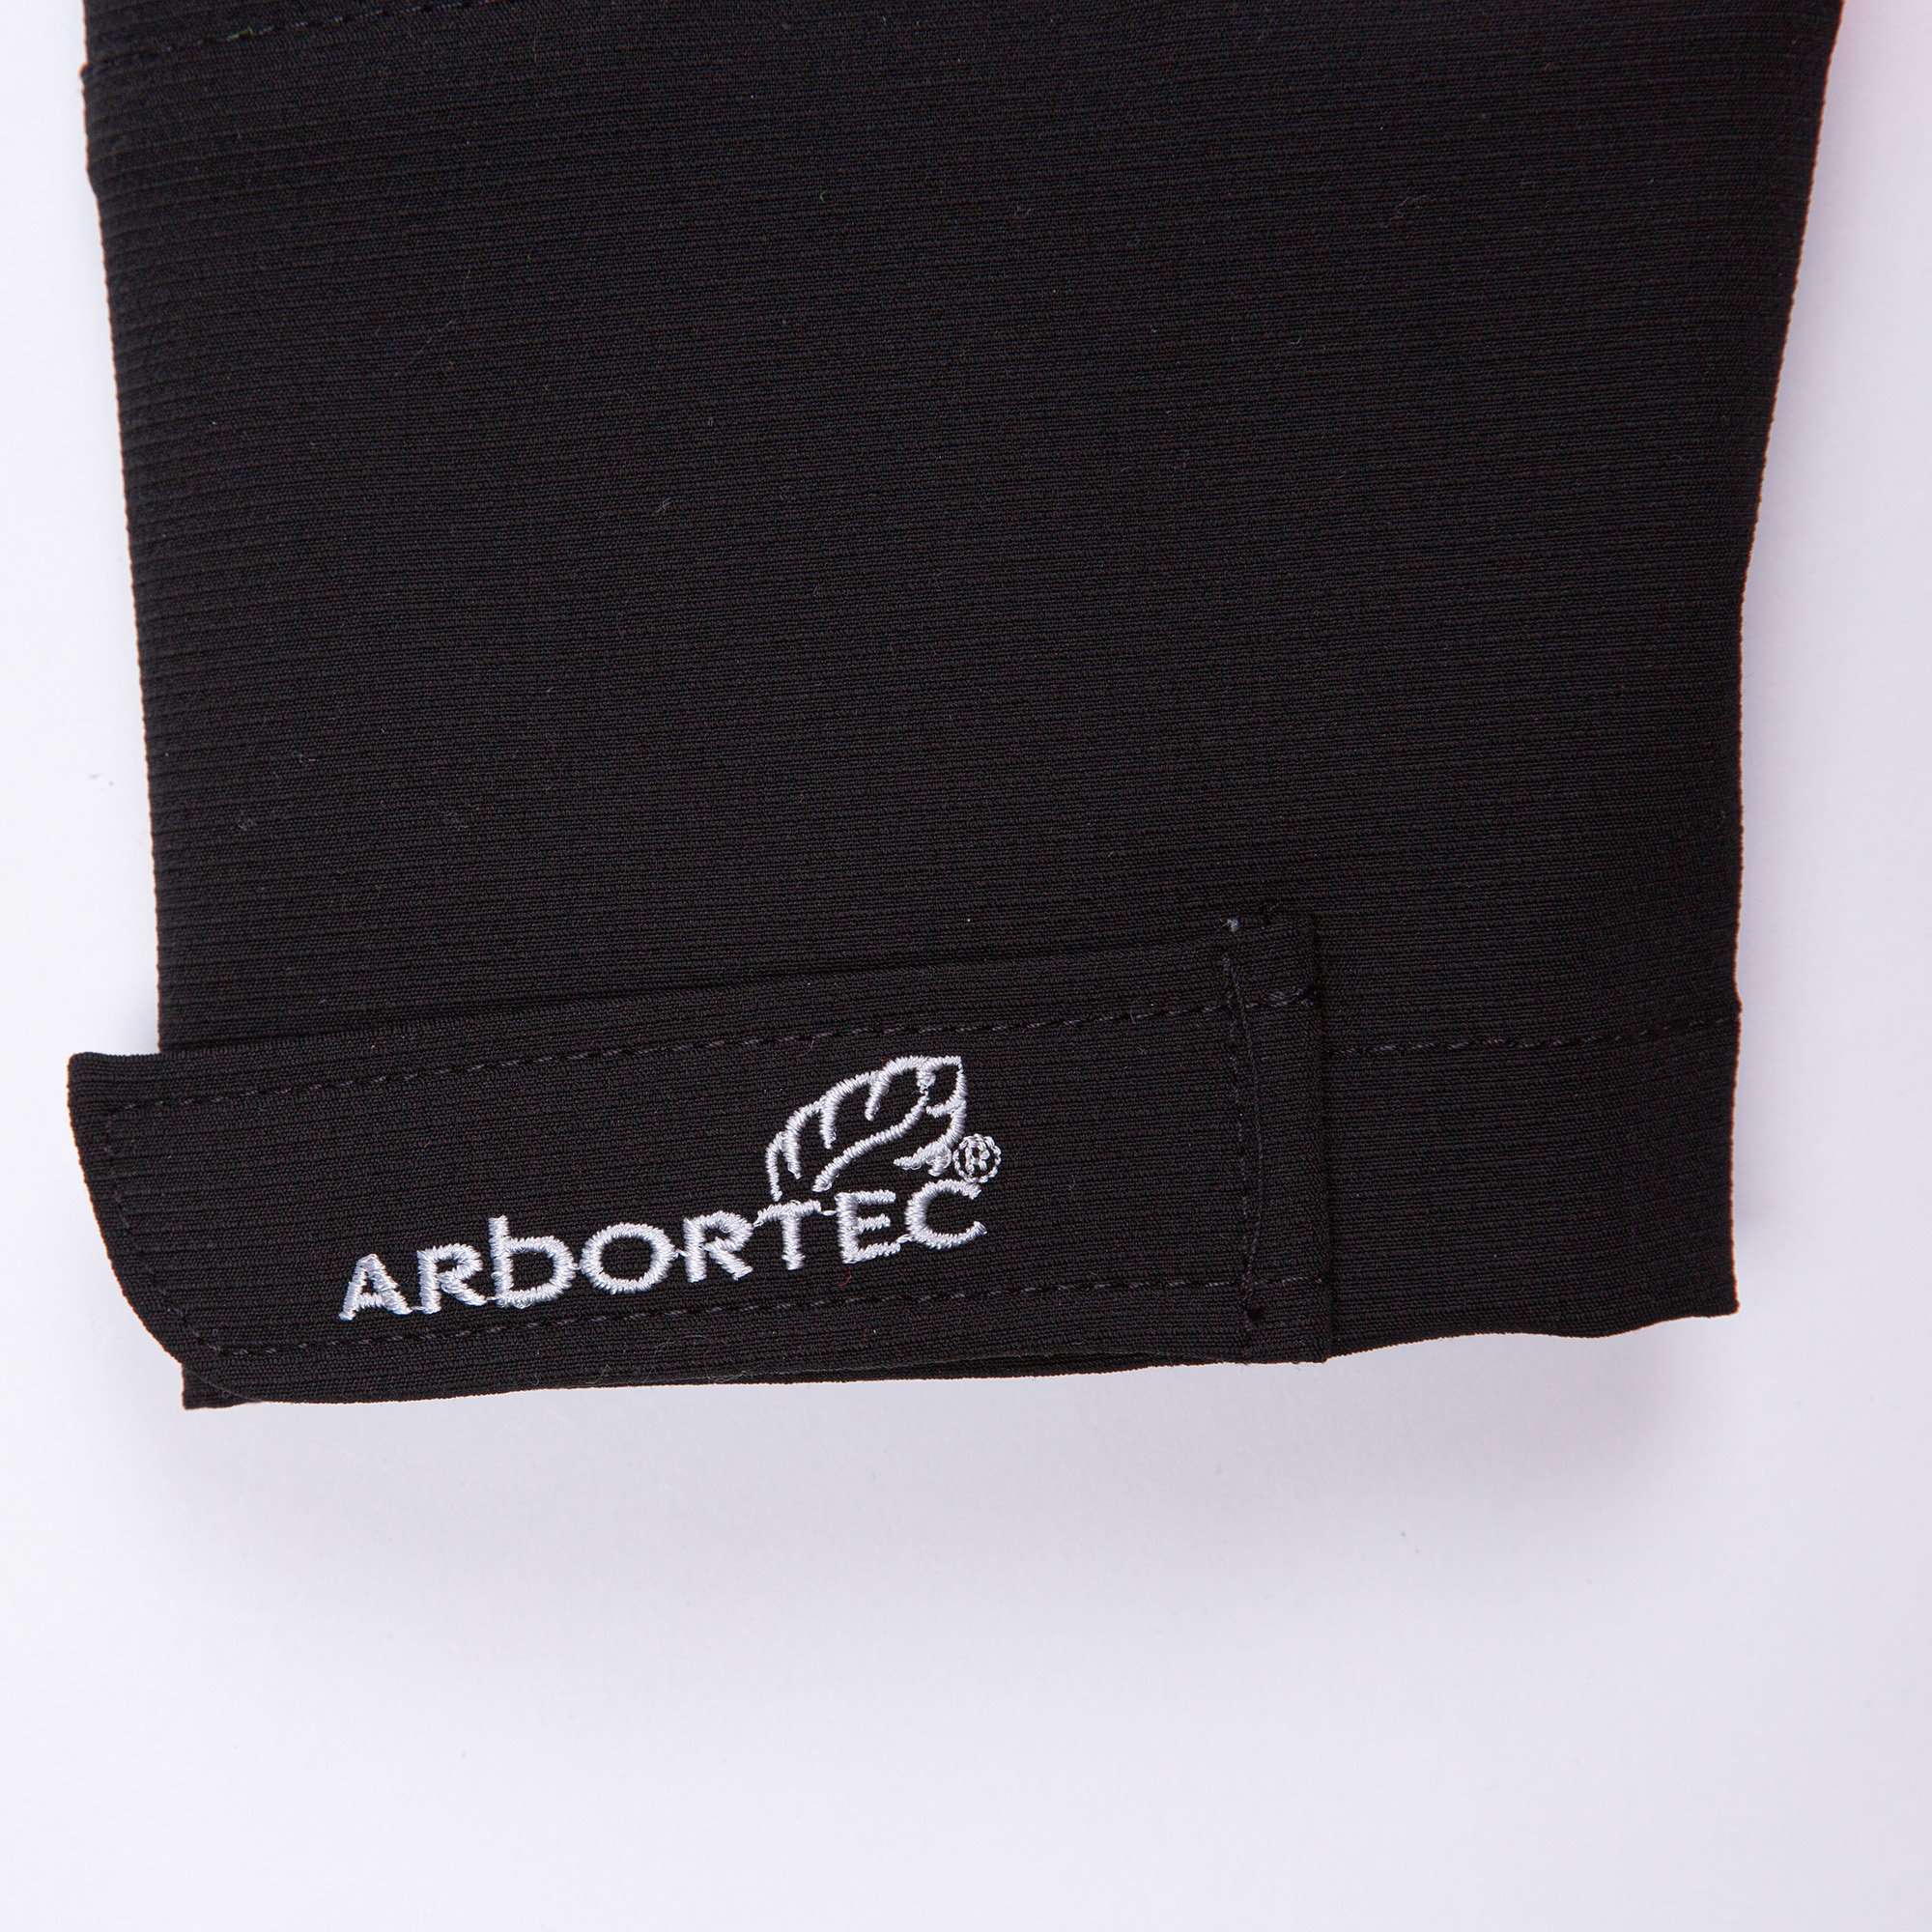 AT4000 Breatheflex Performance Work Jacket  - Orange - Arbortec Forestwear